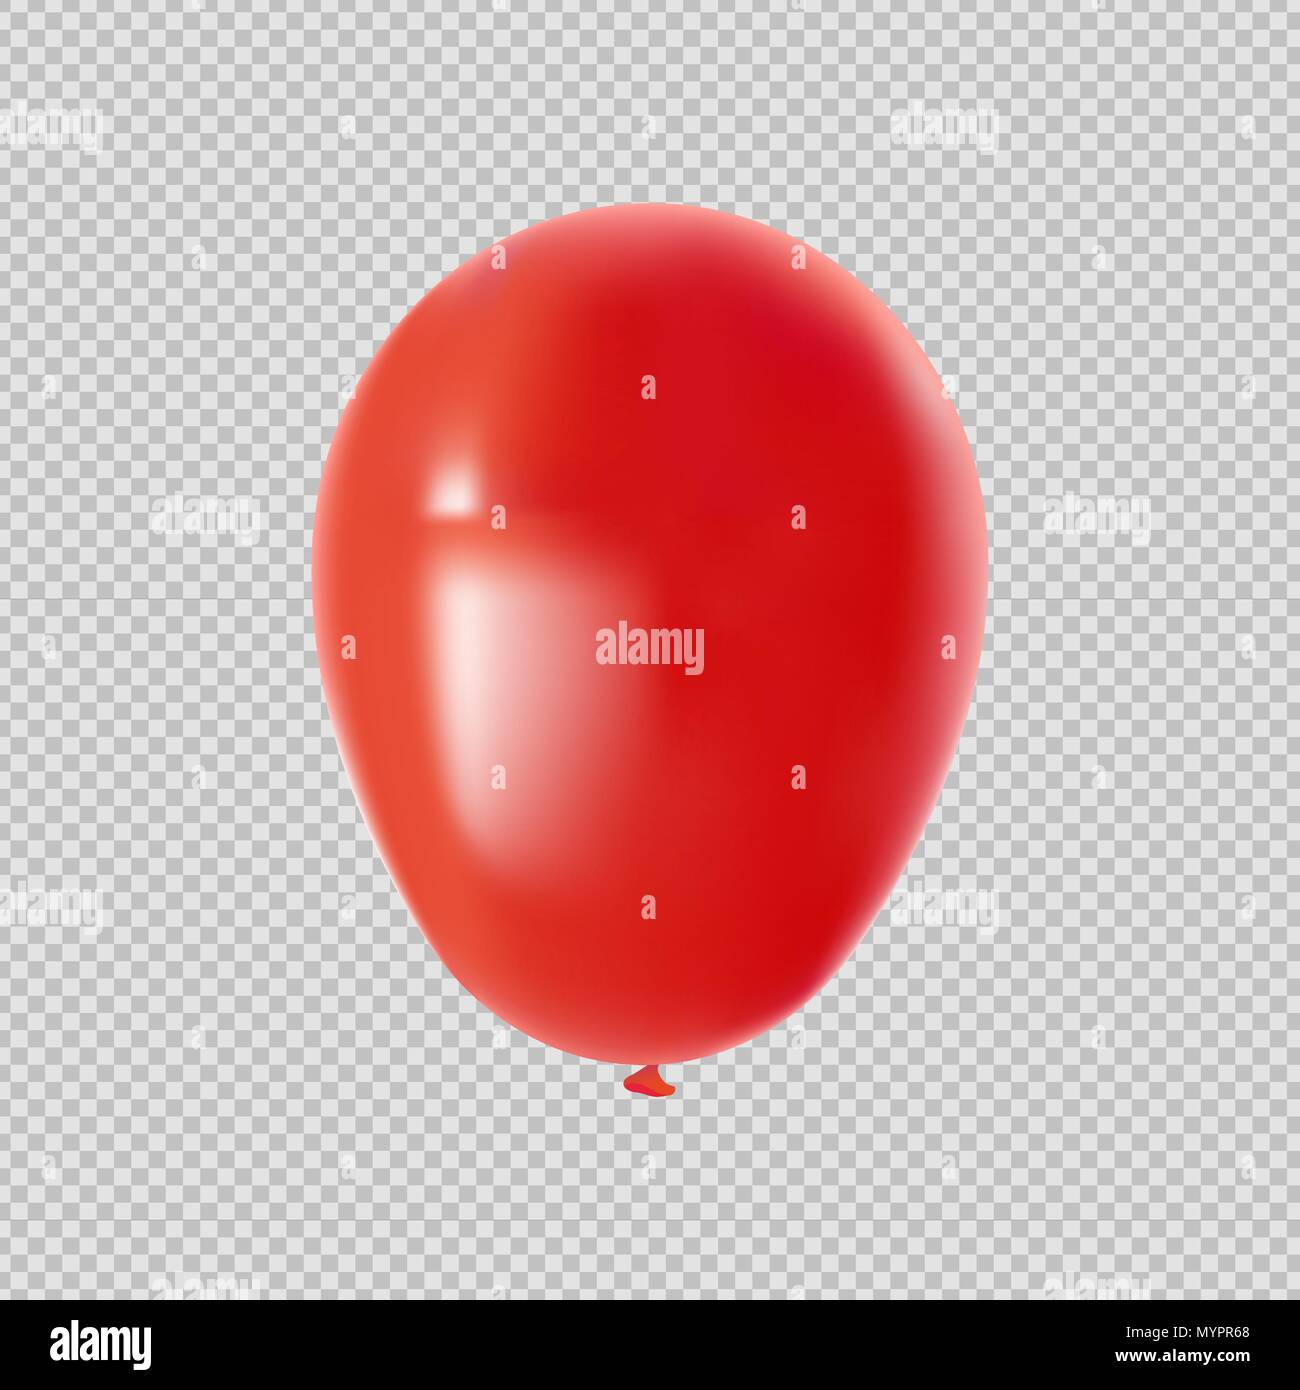 Red Balloon isoliert, transparenter Hintergrund Element für Geburtstag Dekoration oder Partei Ornament. EPS 10 Vektor. Stock Vektor